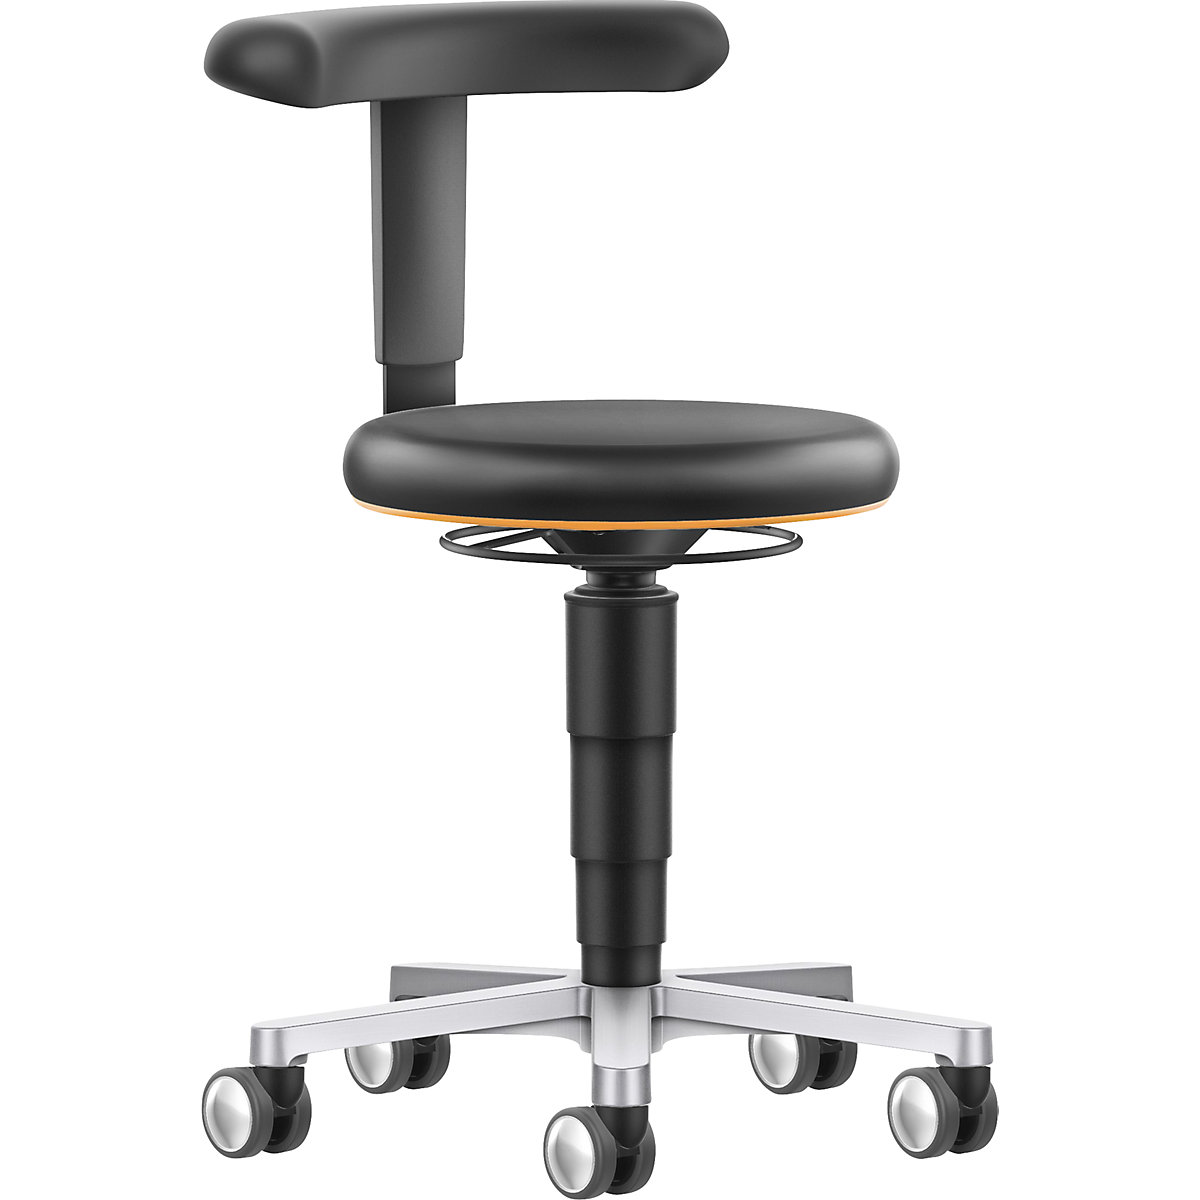 Laboratorní pohyblivá židle s flexibilní podpěrou – bimos